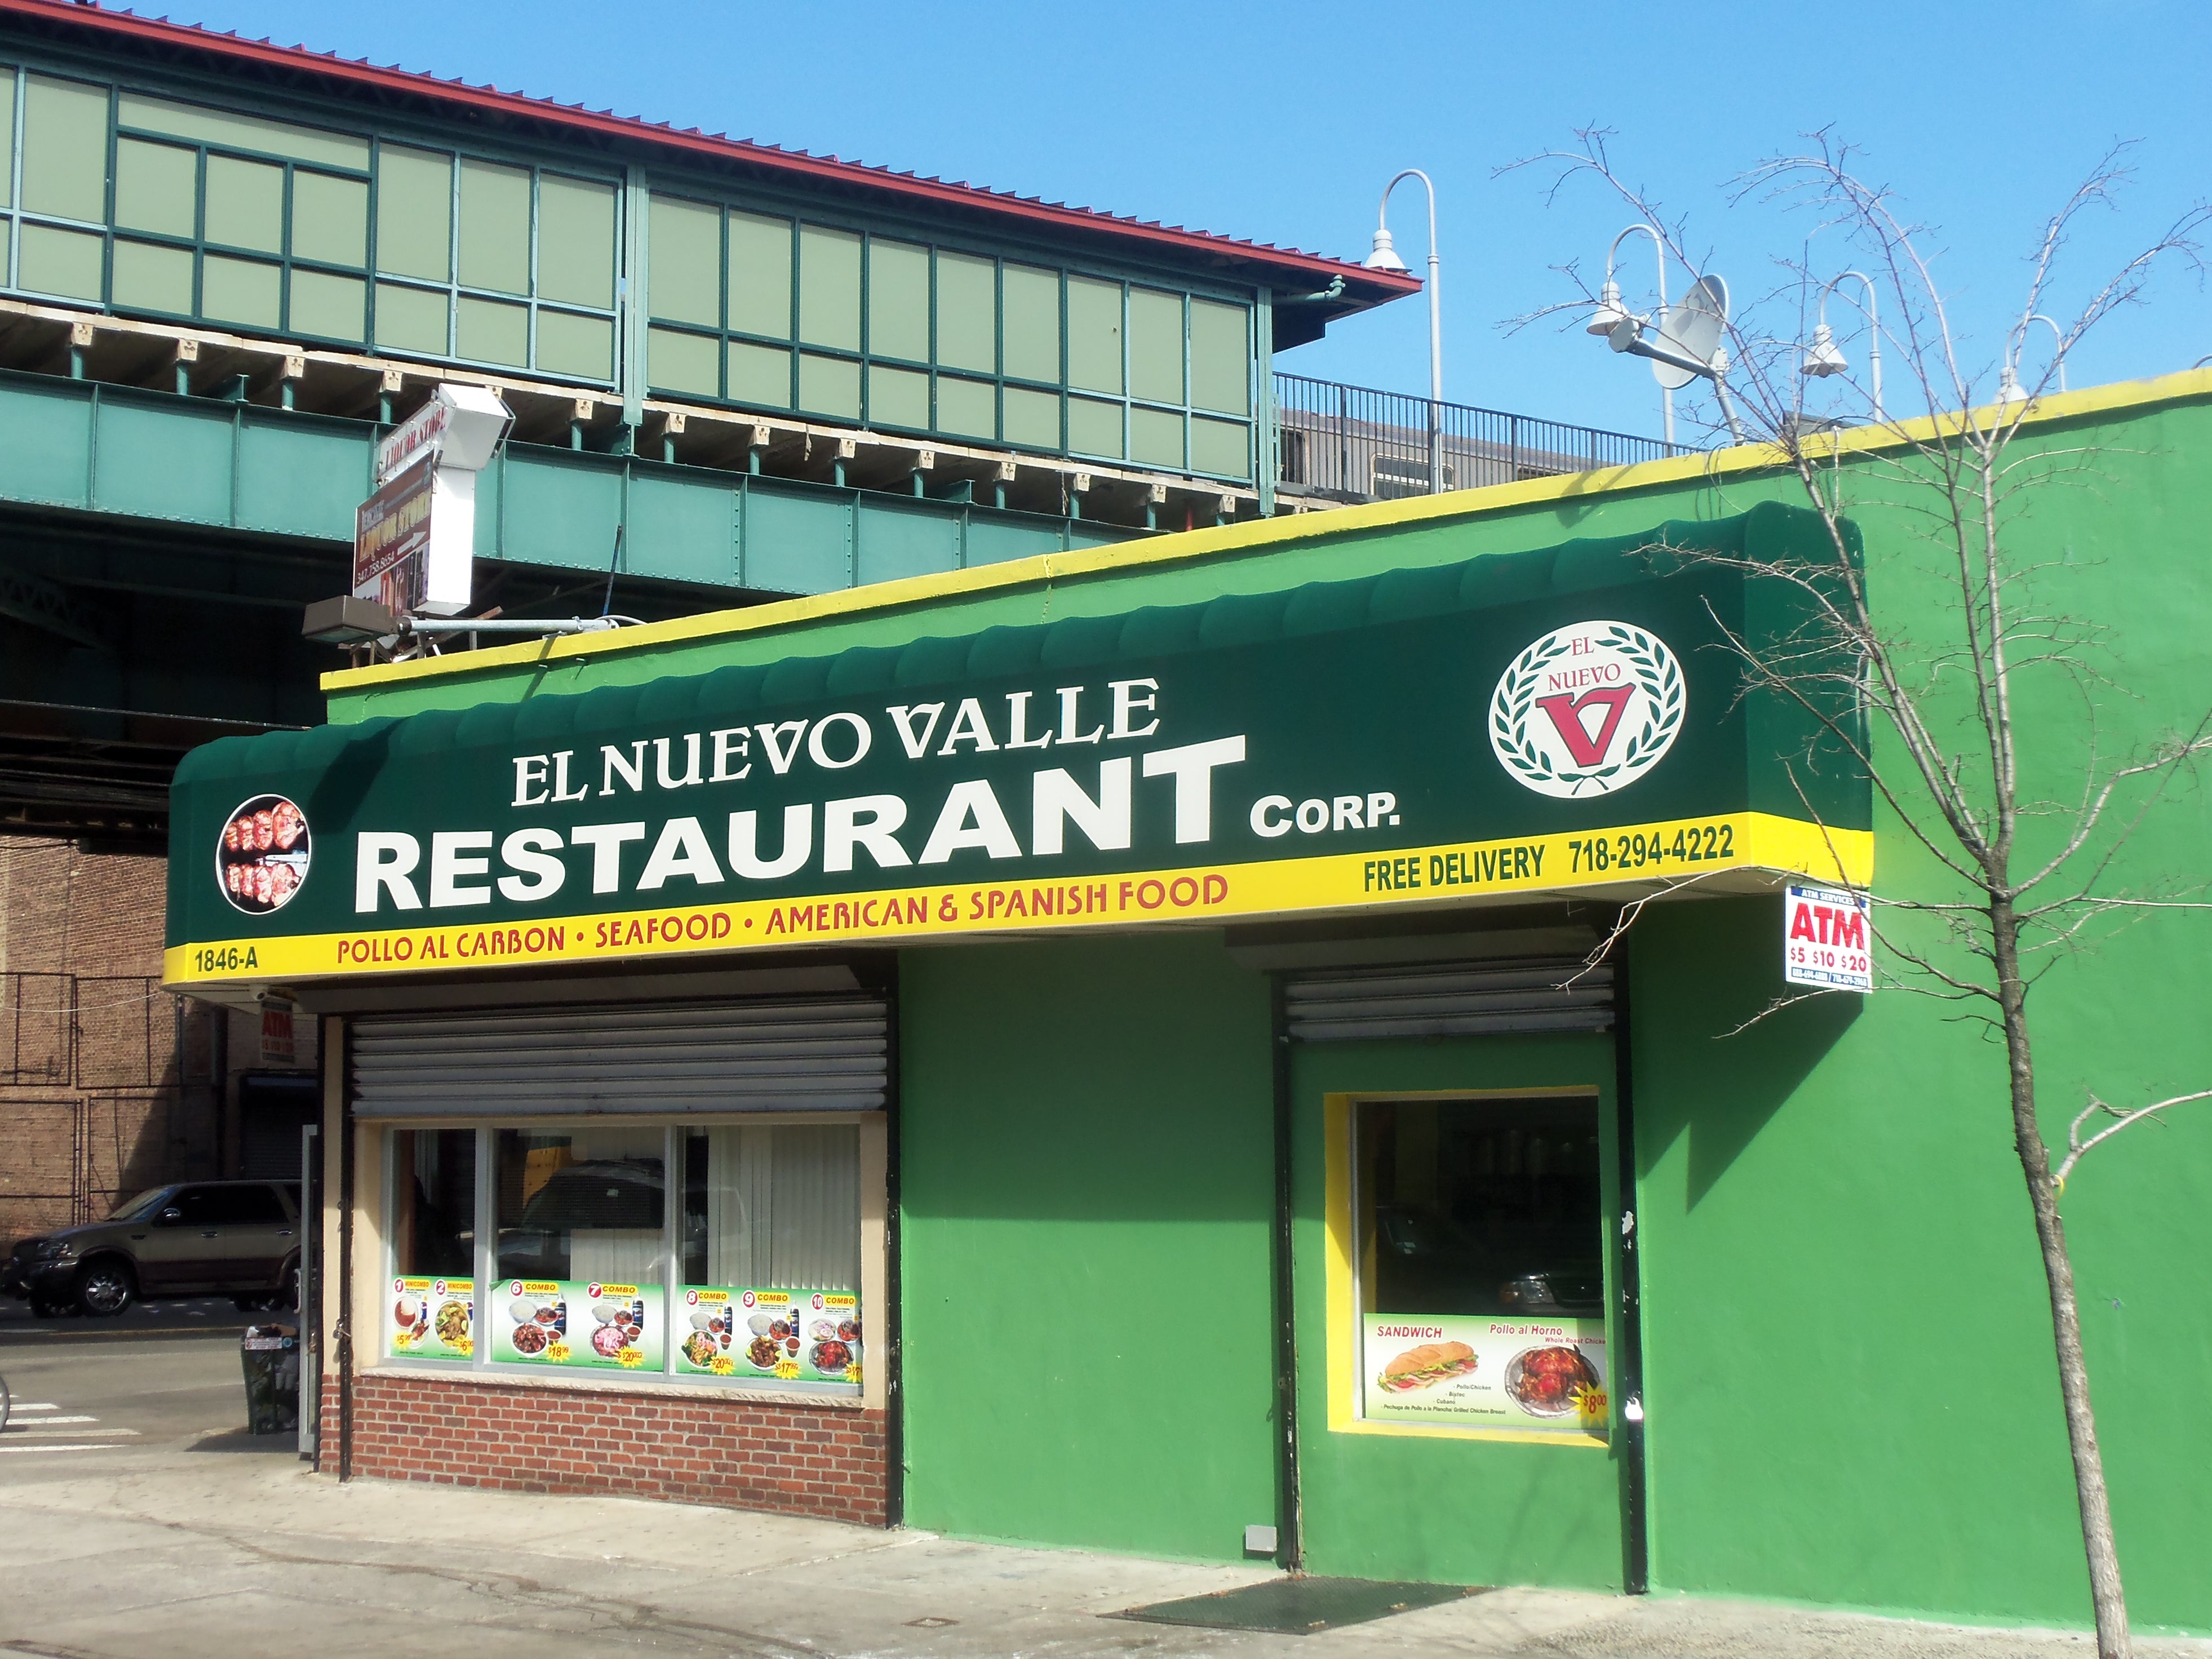 El Nuevo Valle Restaurant